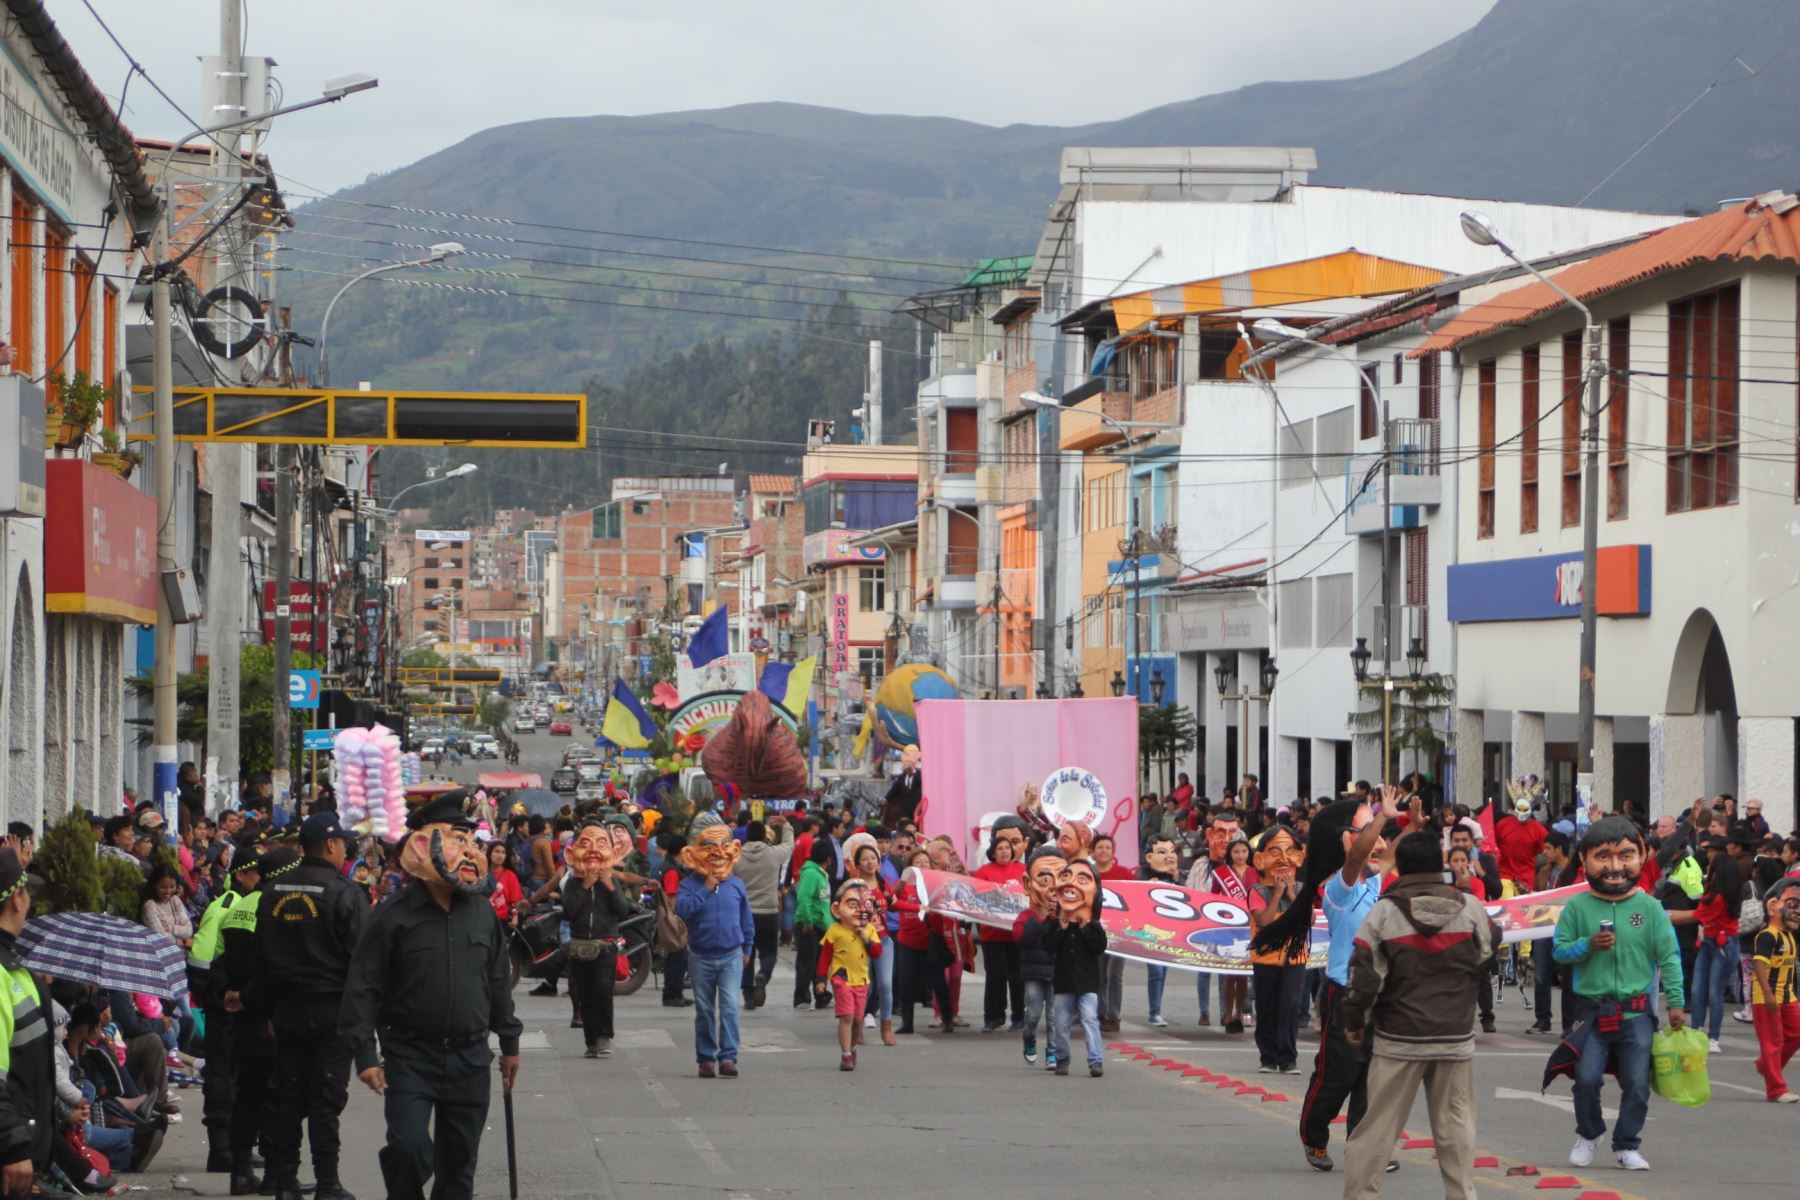 La fiesta de carnaval en Huaraz se inició el último sábado con la representación del reinado del rey Momo.